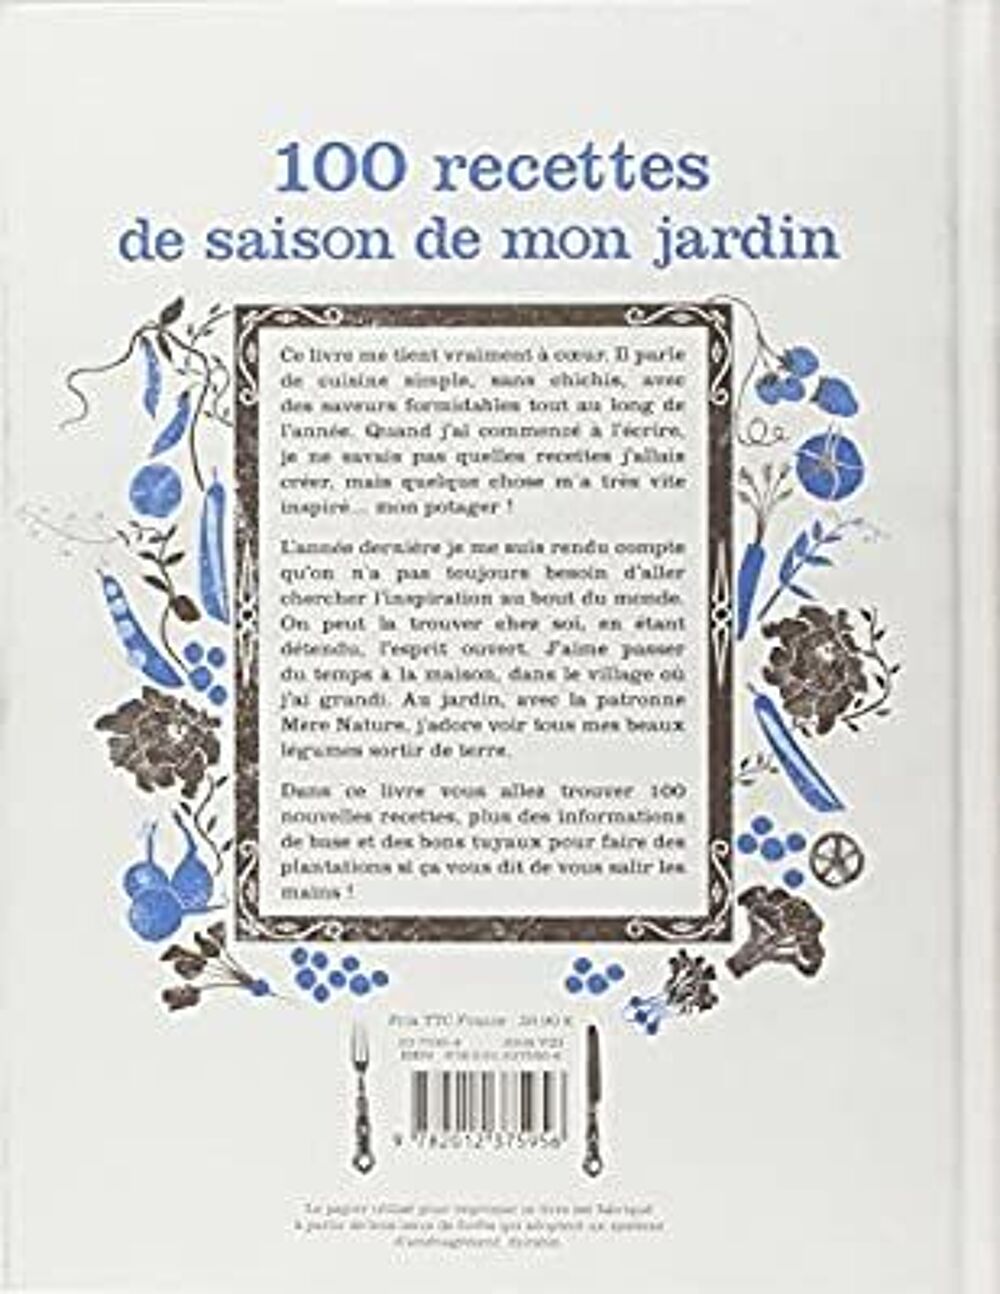 100 recettes de saison de mon jardin
Jamie Oliver Livres et BD